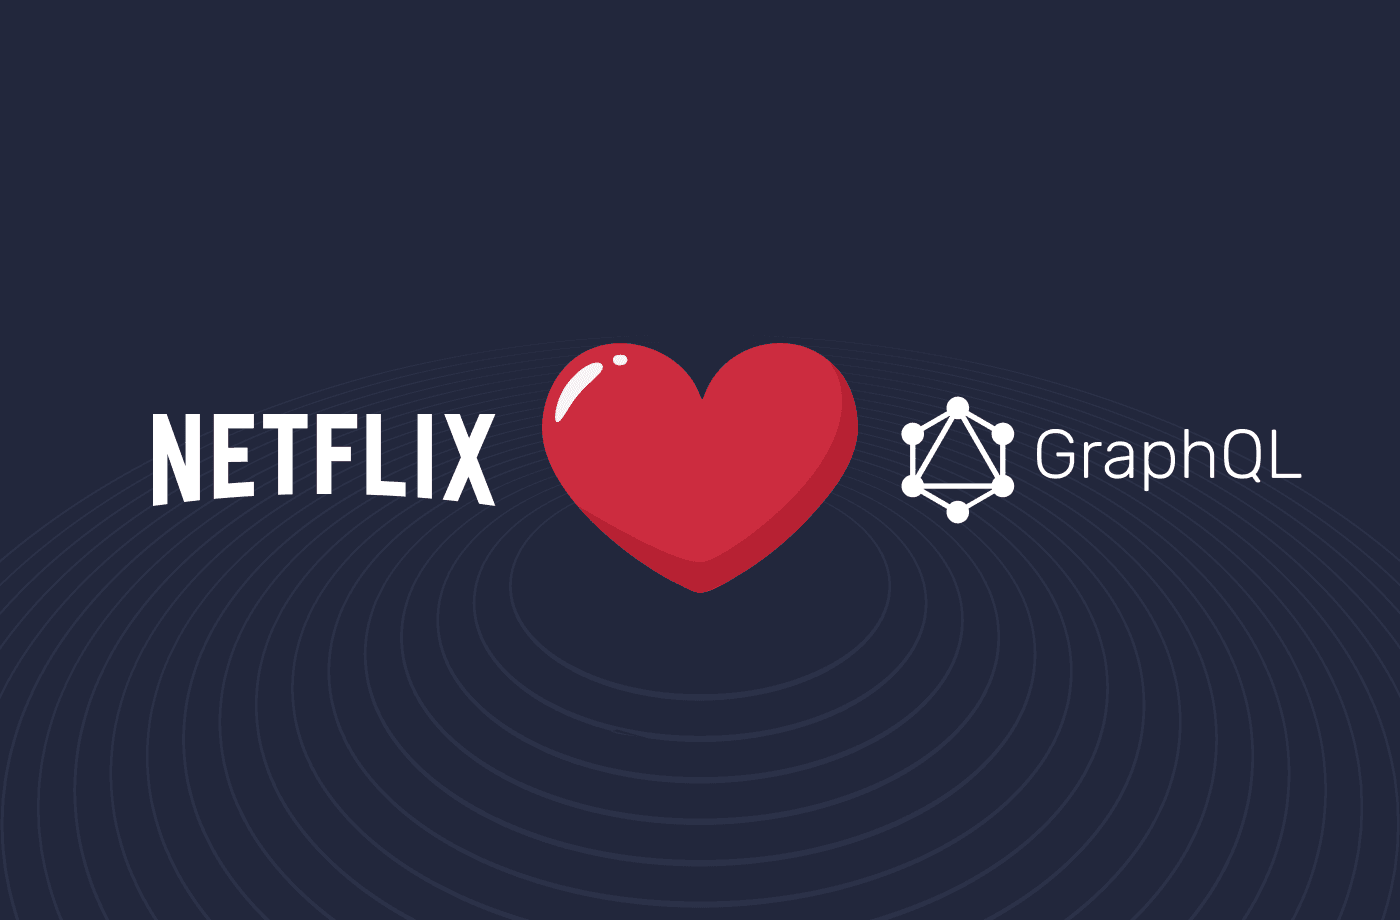 Why Netflix Took a Bet on GraphQL